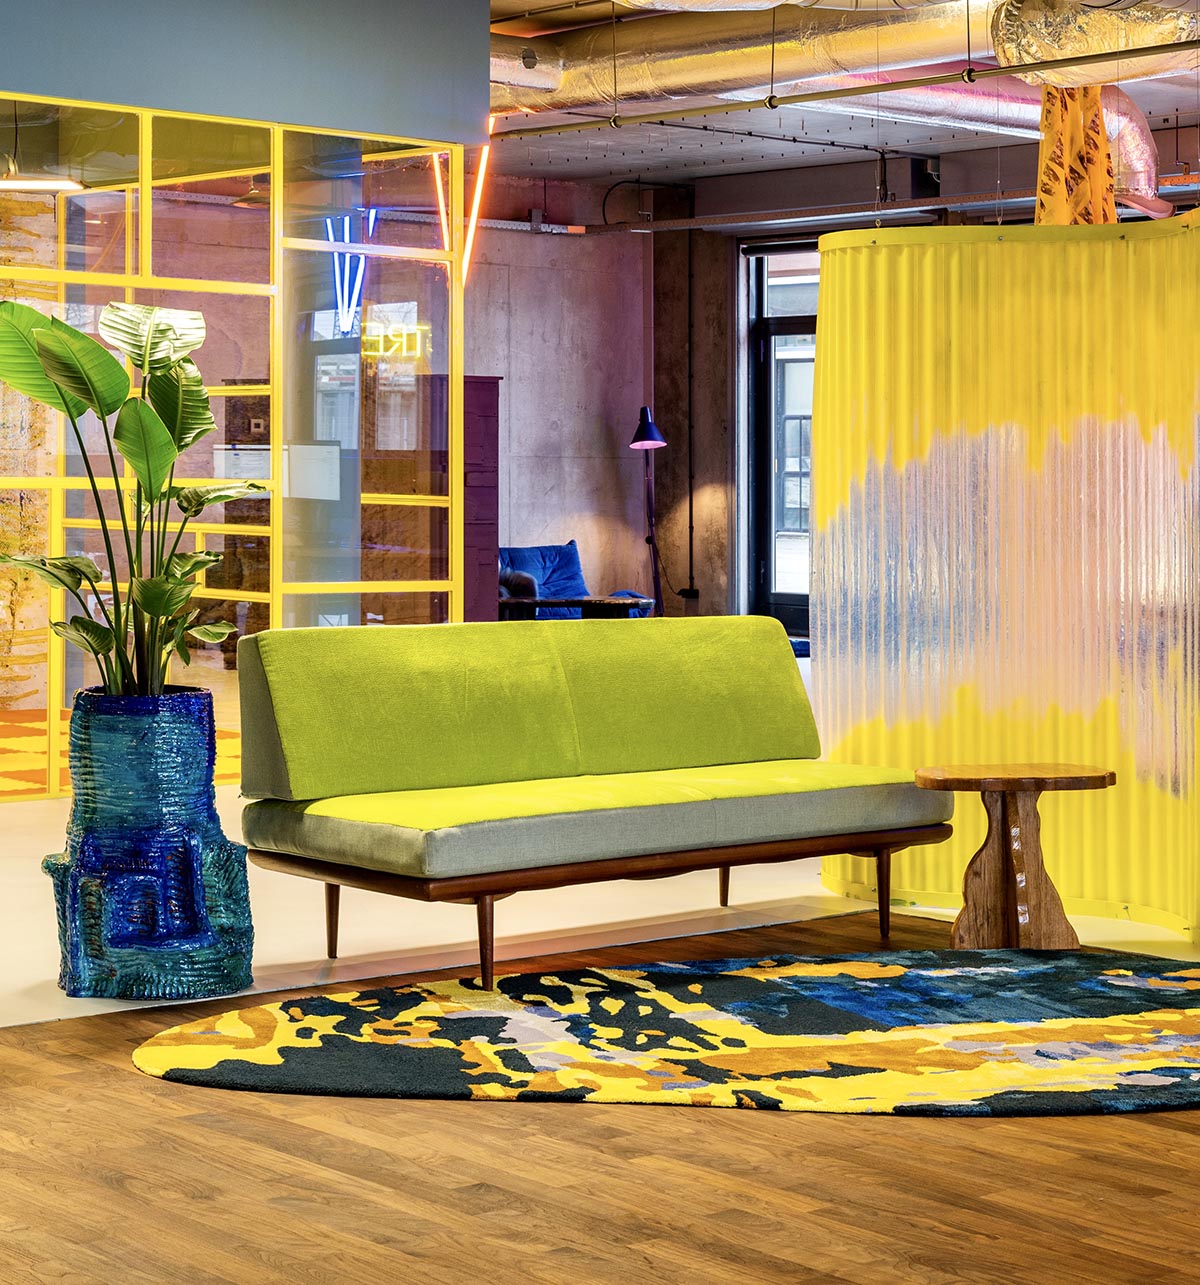 Художественные цветовые схемы информируют офис в Амстердаме, разработанный Studio Noun.